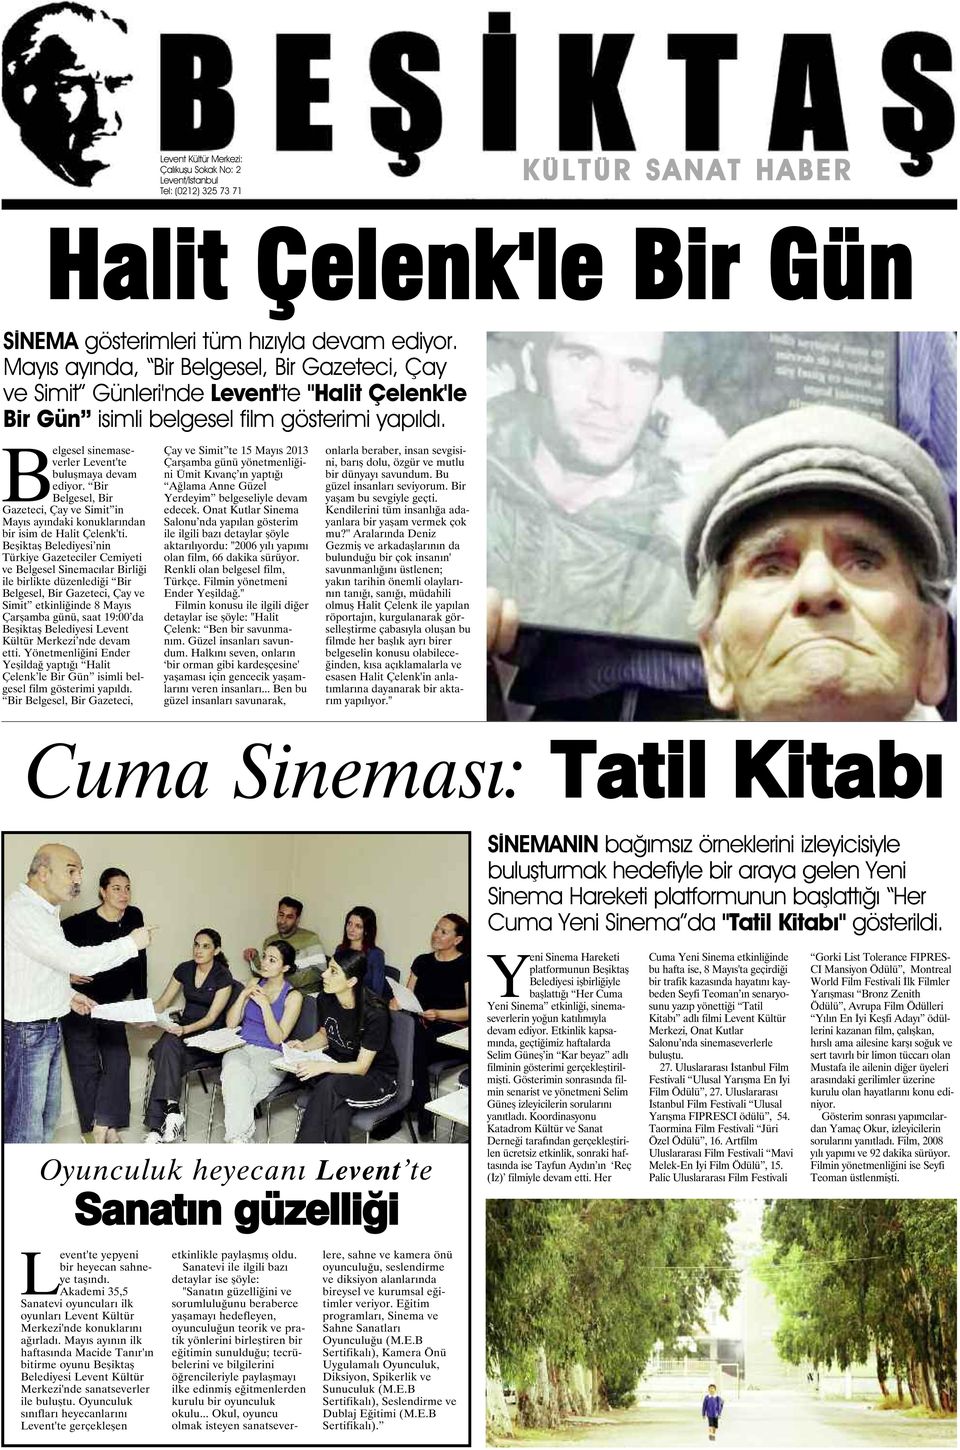 Bir Belgesel, Bir Gazeteci, Çay ve Simit in Mayıs ayındaki konuklarından bir isim de Halit Çelenk'ti.